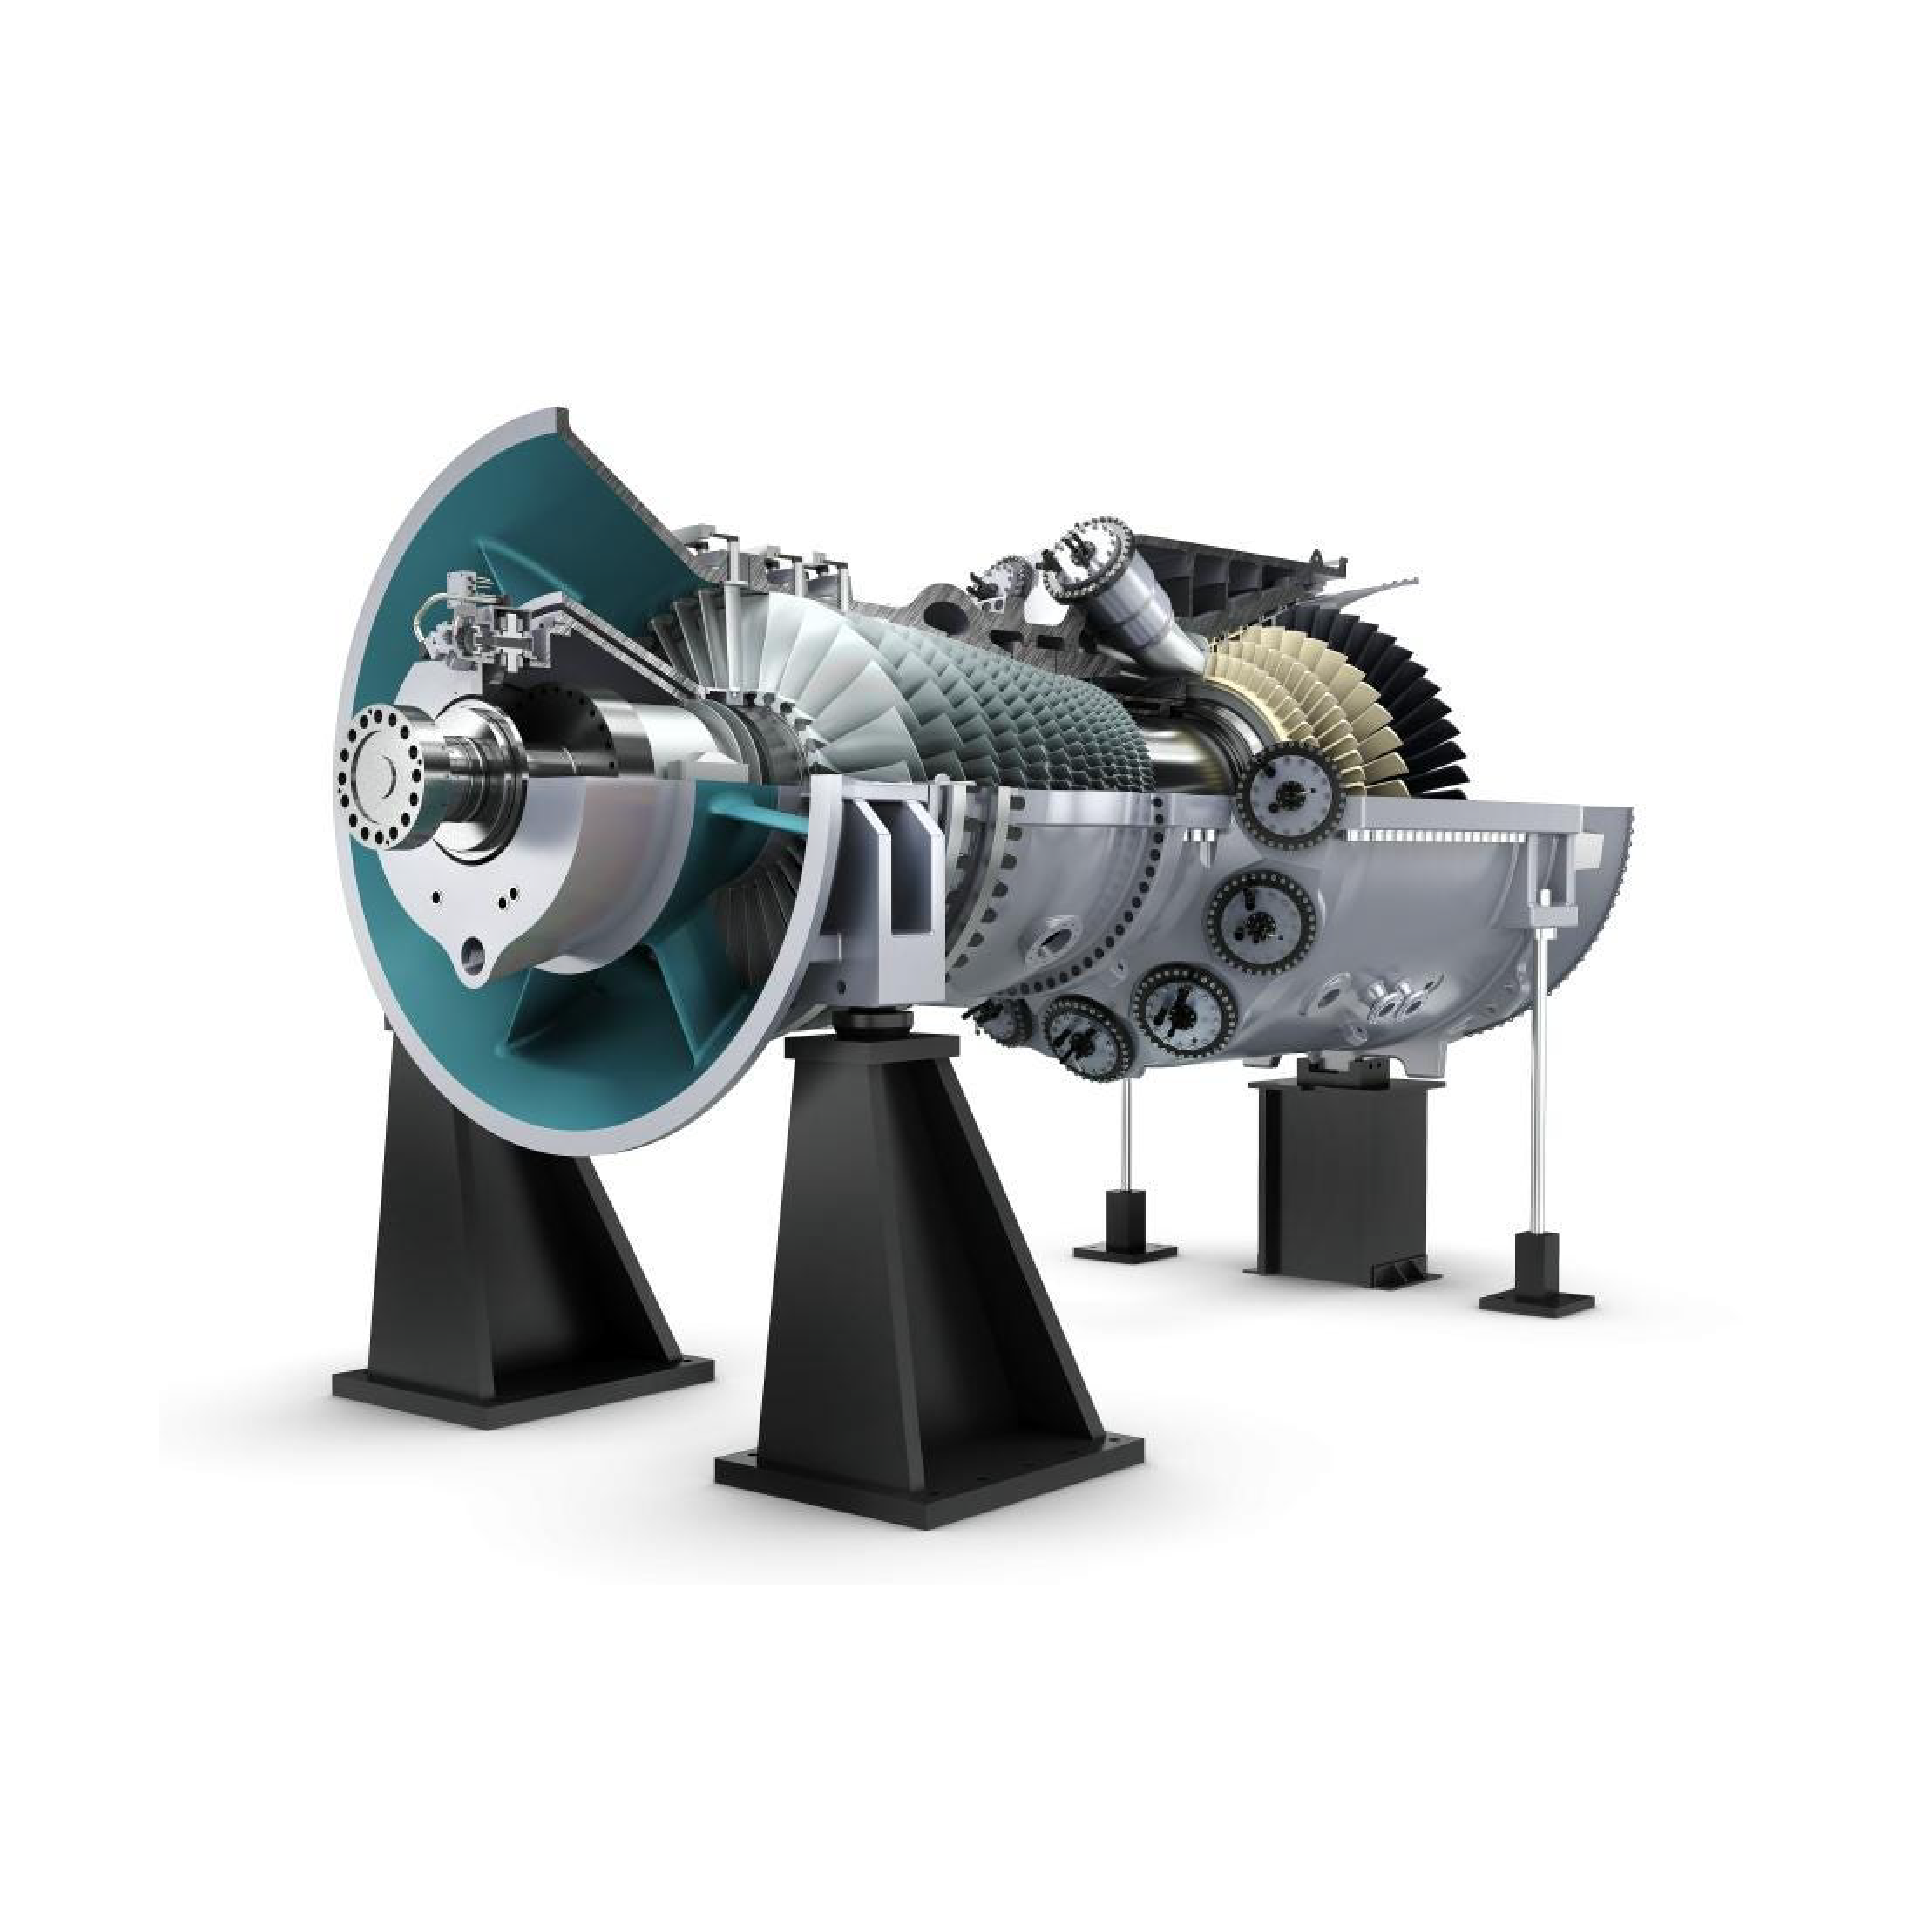 Siemens turbine Spare Part